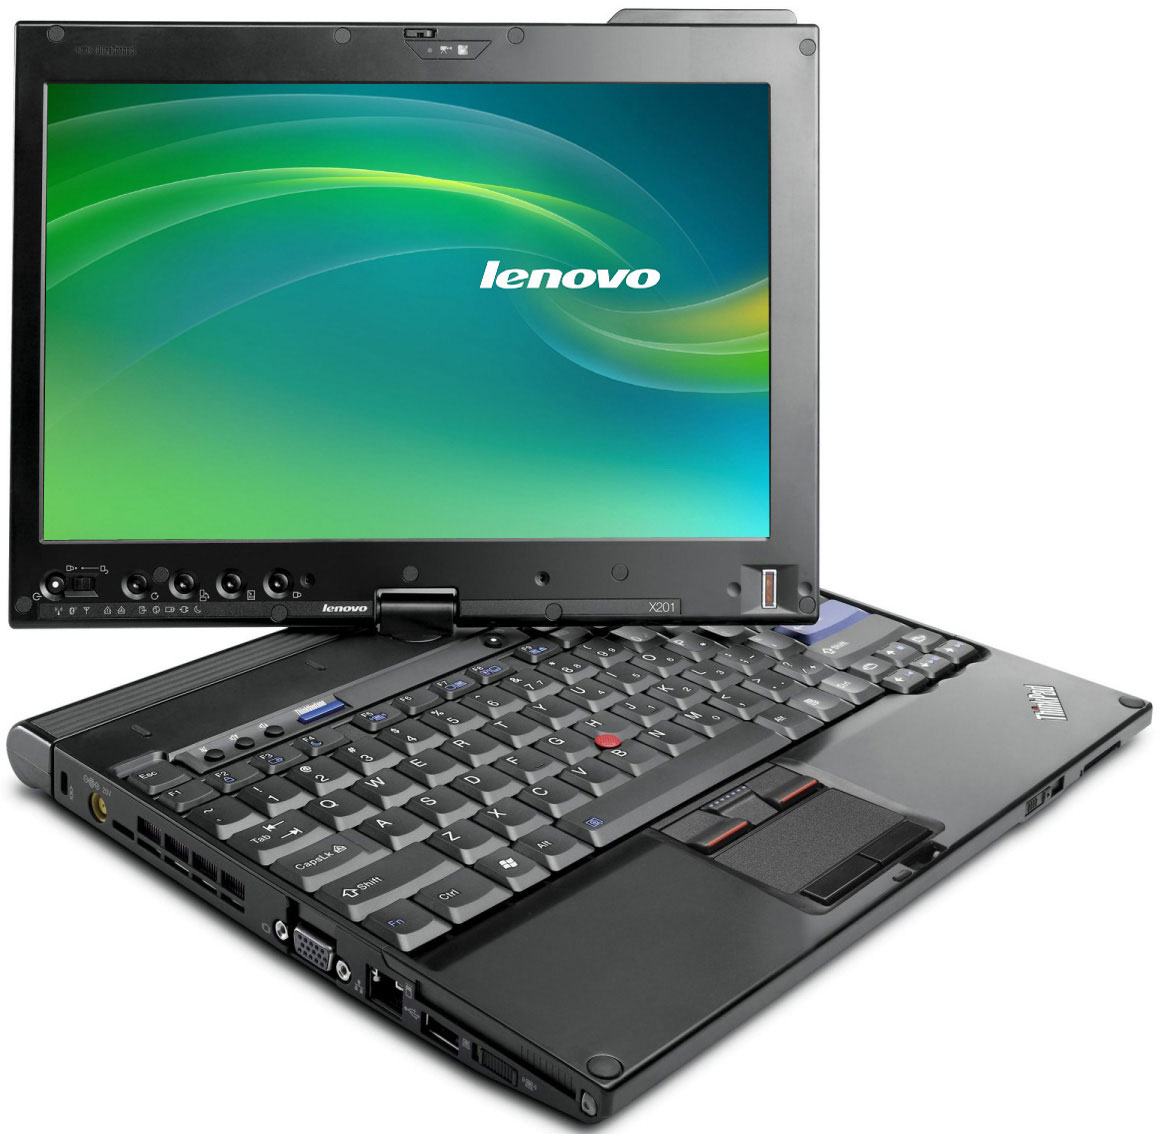 Lenovo thinkpad x201i review dcs551b